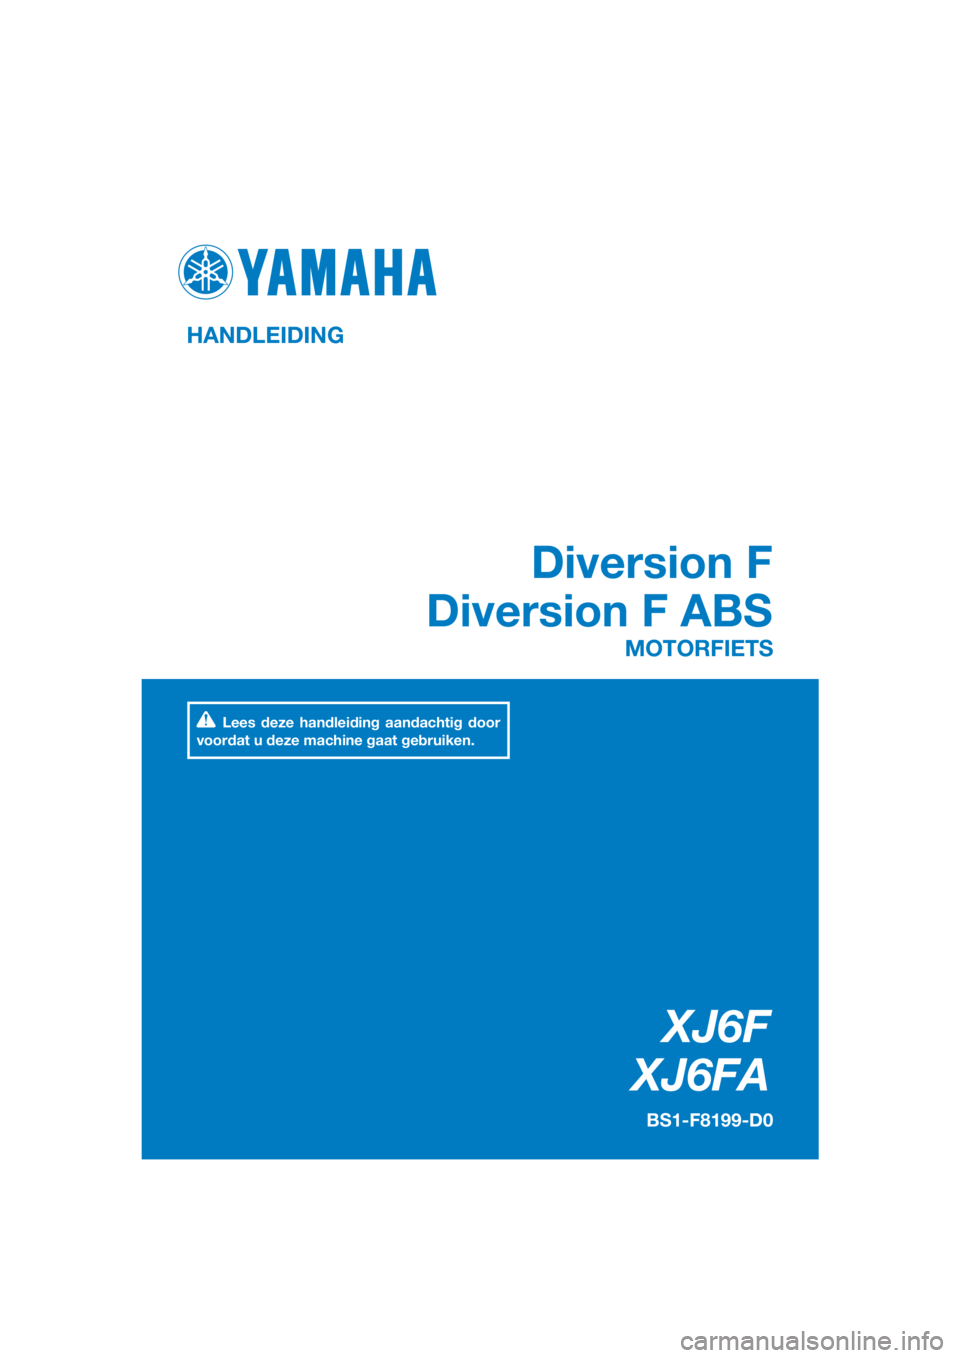 YAMAHA XJ6F 2016  Instructieboekje (in Dutch) DIC183
XJ6F
XJ6FA
Diversion F
Diversion F ABS
HANDLEIDING
BS1-F8199-D0
MOTORFIETS
Lees deze handleiding aandachtig door 
voordat u deze machine gaat gebruiken.
[Dutch  (D)] 